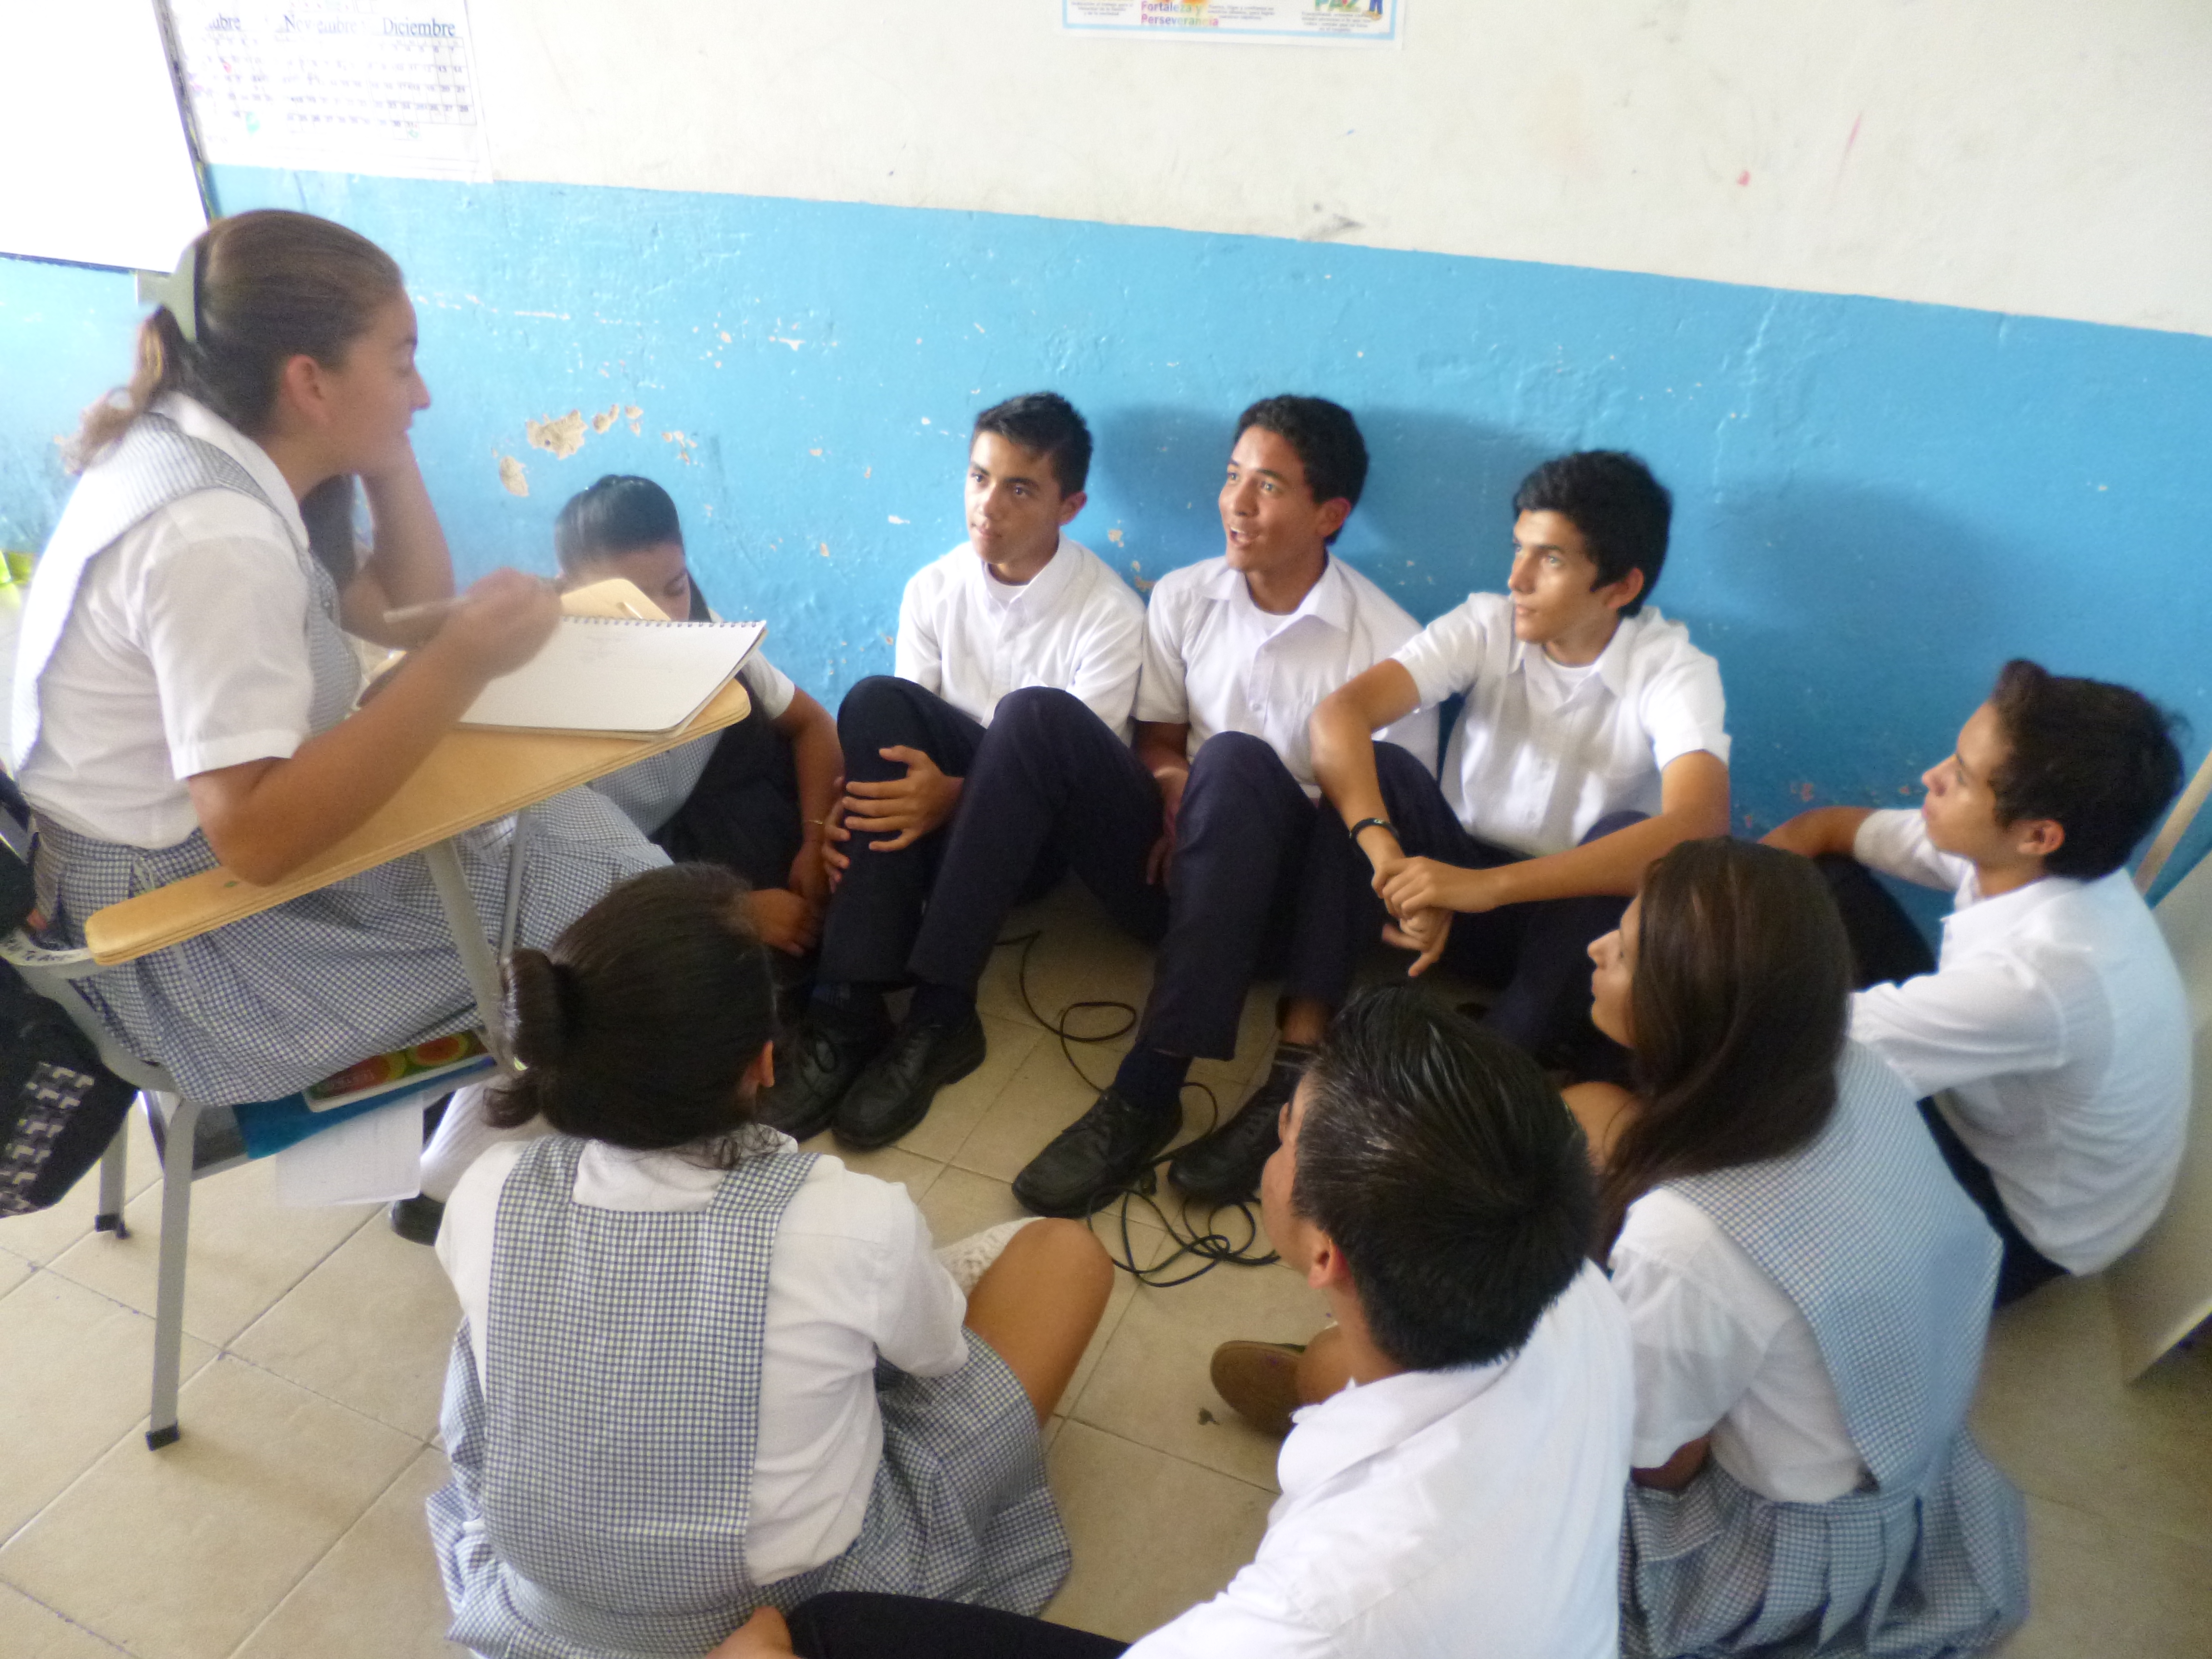 Alumnos reunidos por grupos realizando actividades sobre ciencias naturales